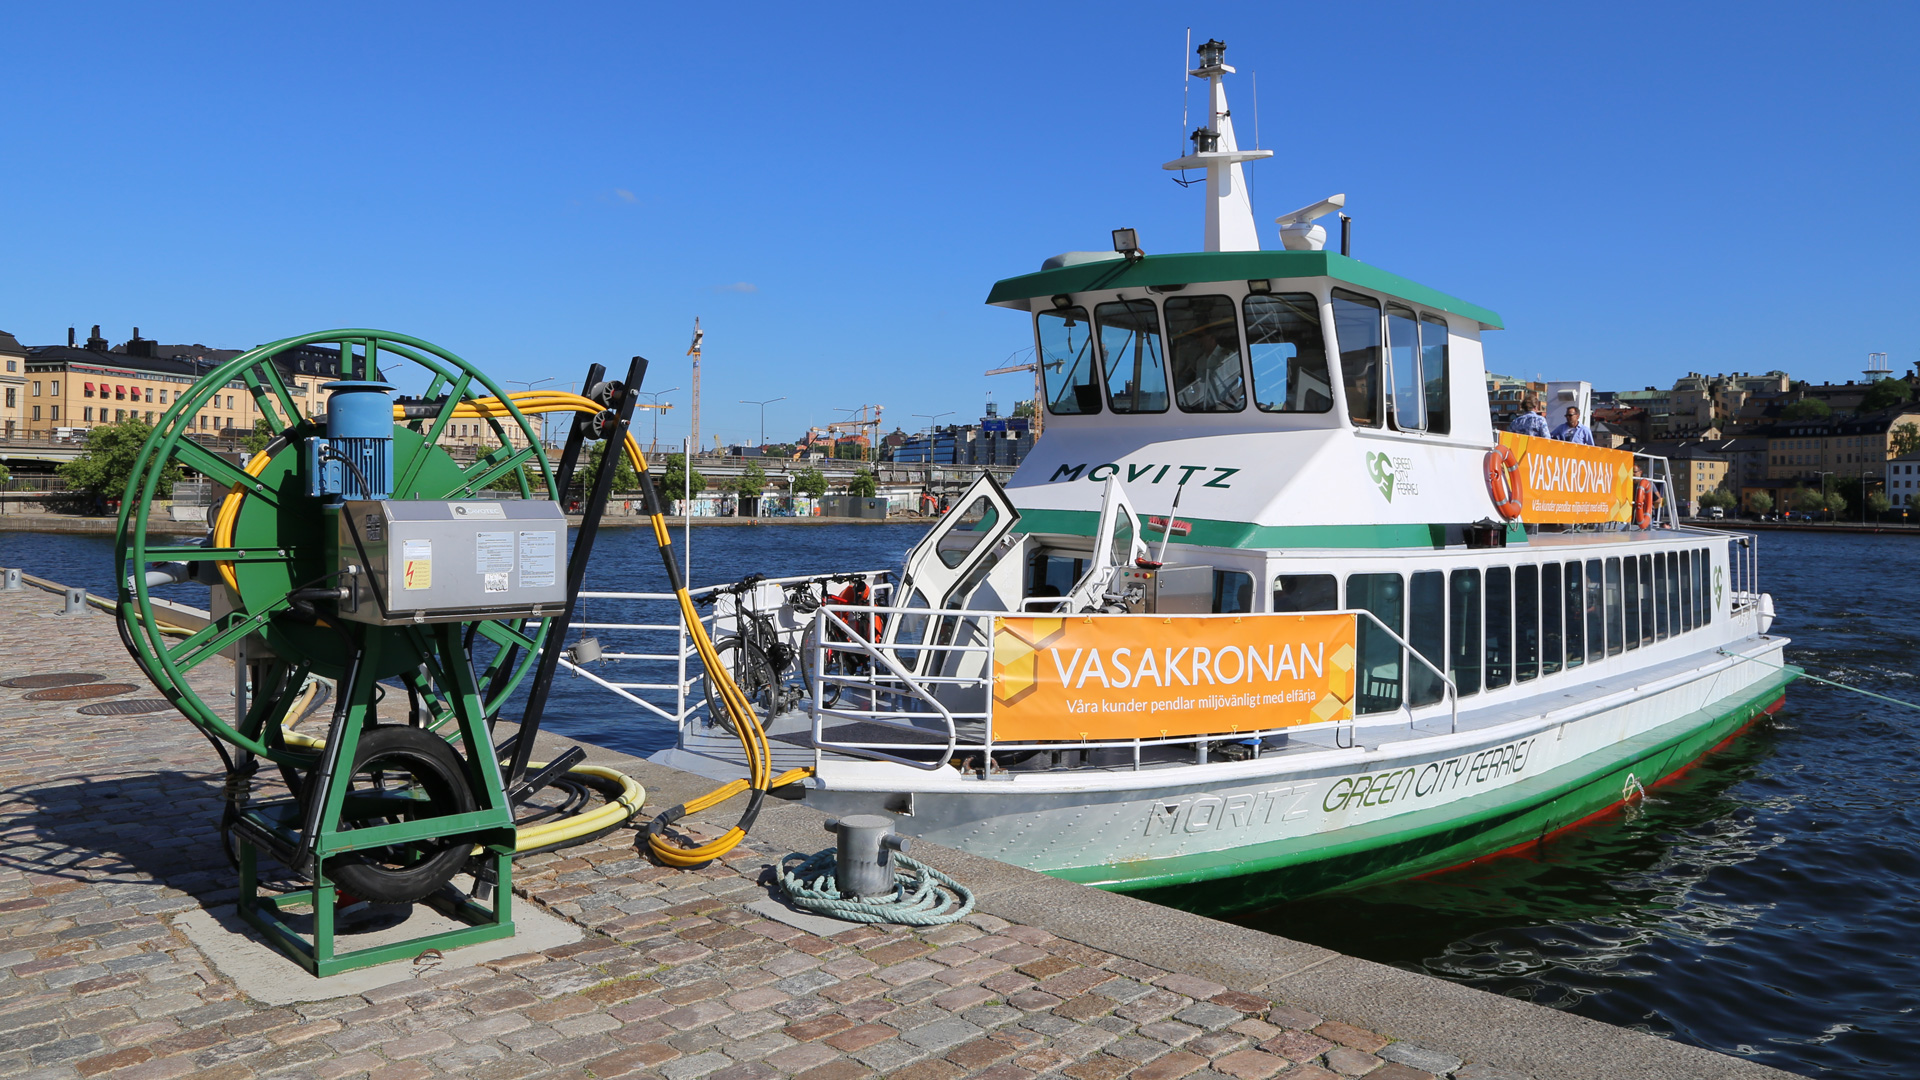 De elektrische veerboot E/S Movitz heeft een lagere CO2-uitstoot en is stiller dan conventionele dieselboten. De boot wordt gesponsord door de vastgoedondernemingen Vasakronan en Humlegården, die hun huurders aan het Mälarmeer duurzame vervoersopties willen aanbieden.